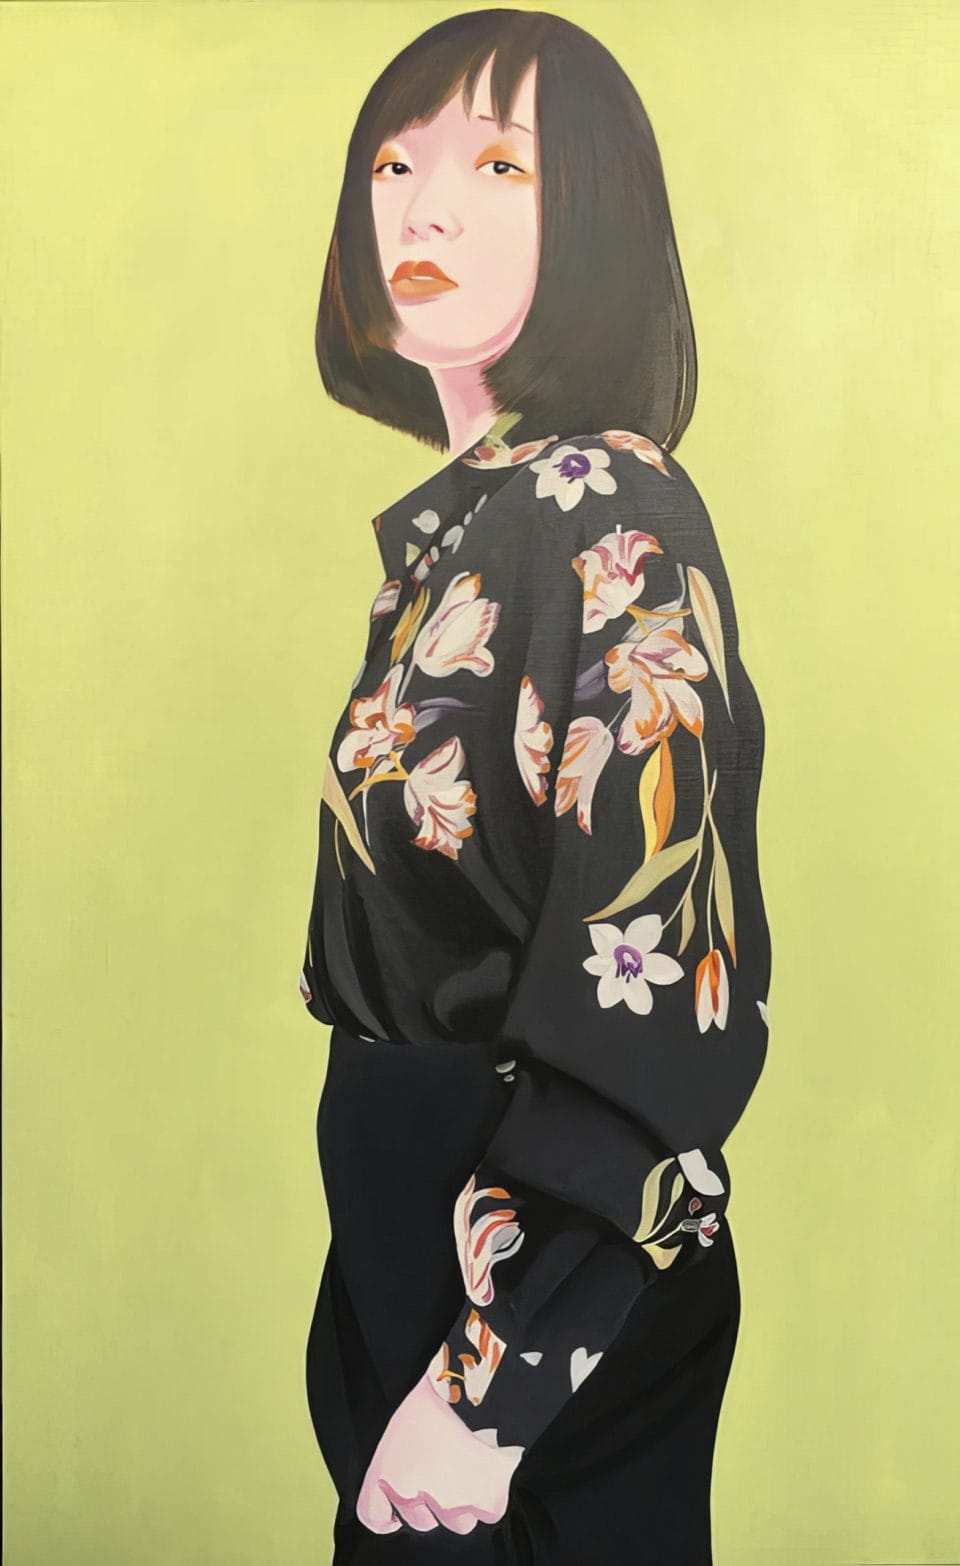 Modi Huile sur toile oil on canvas 116 x 73 cm